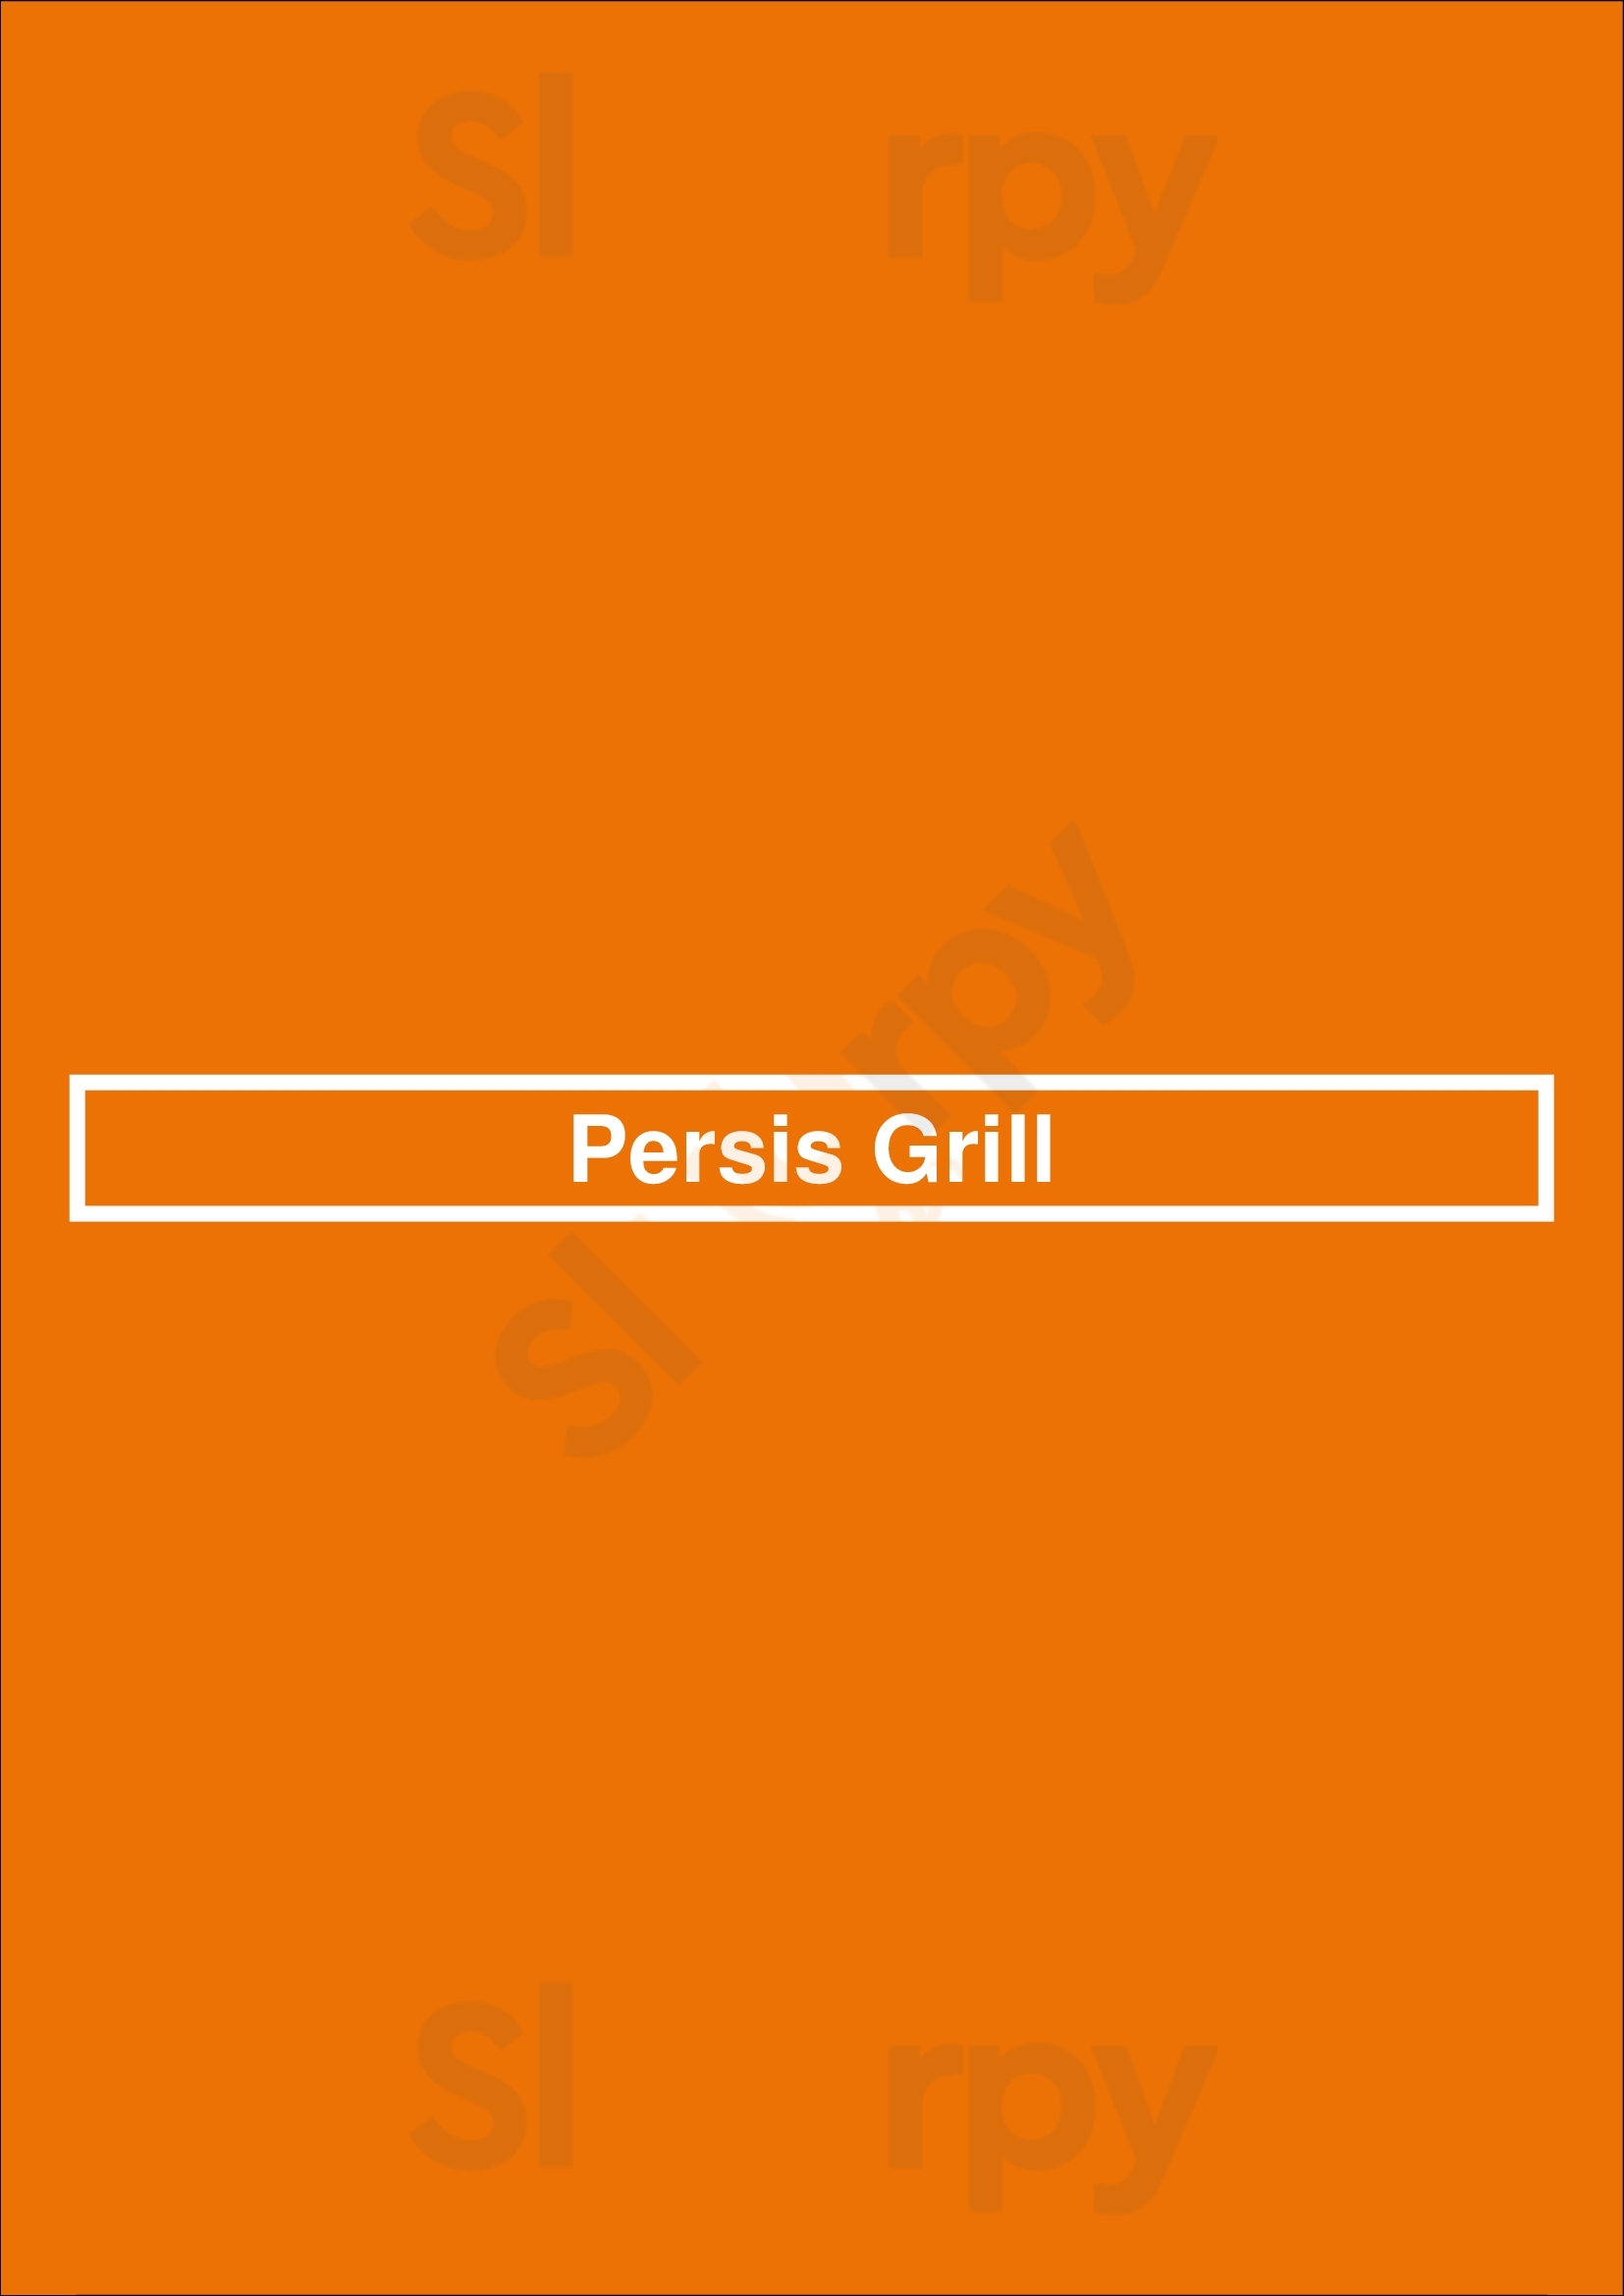 Persis Grill Ottawa Menu - 1